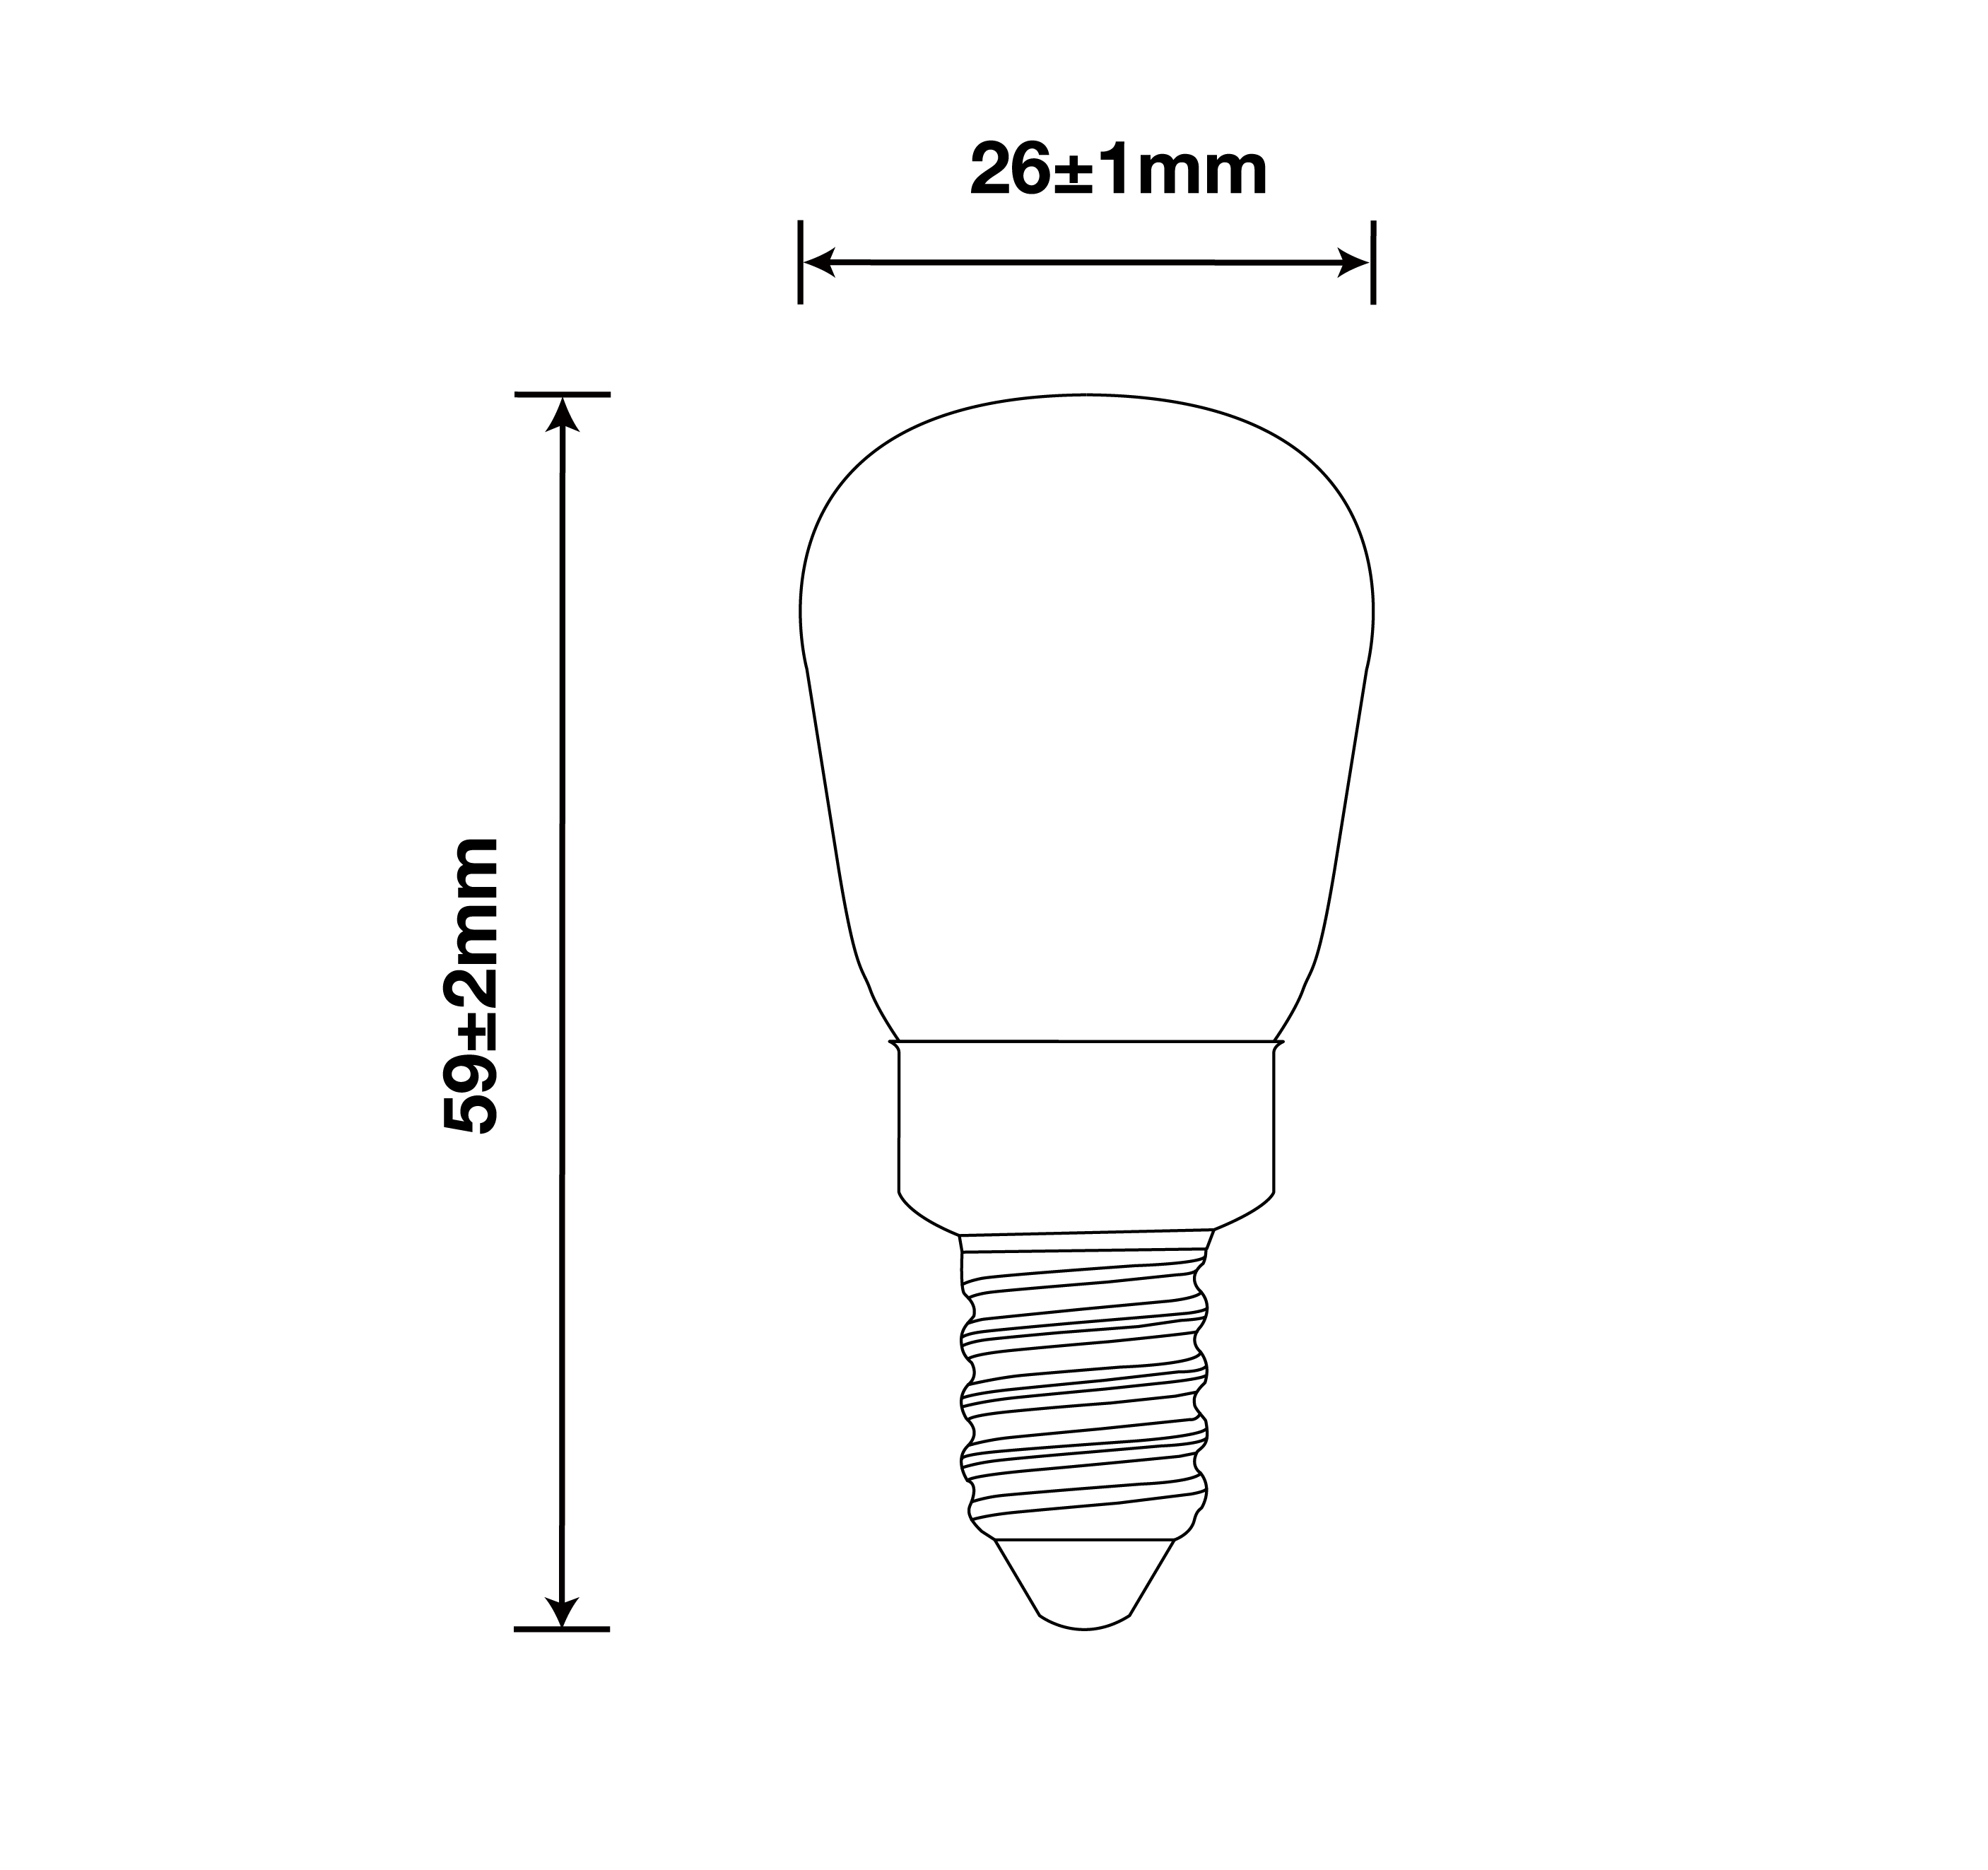 2W Filament Bulbs/25Watts Edison ST8 Bulbs